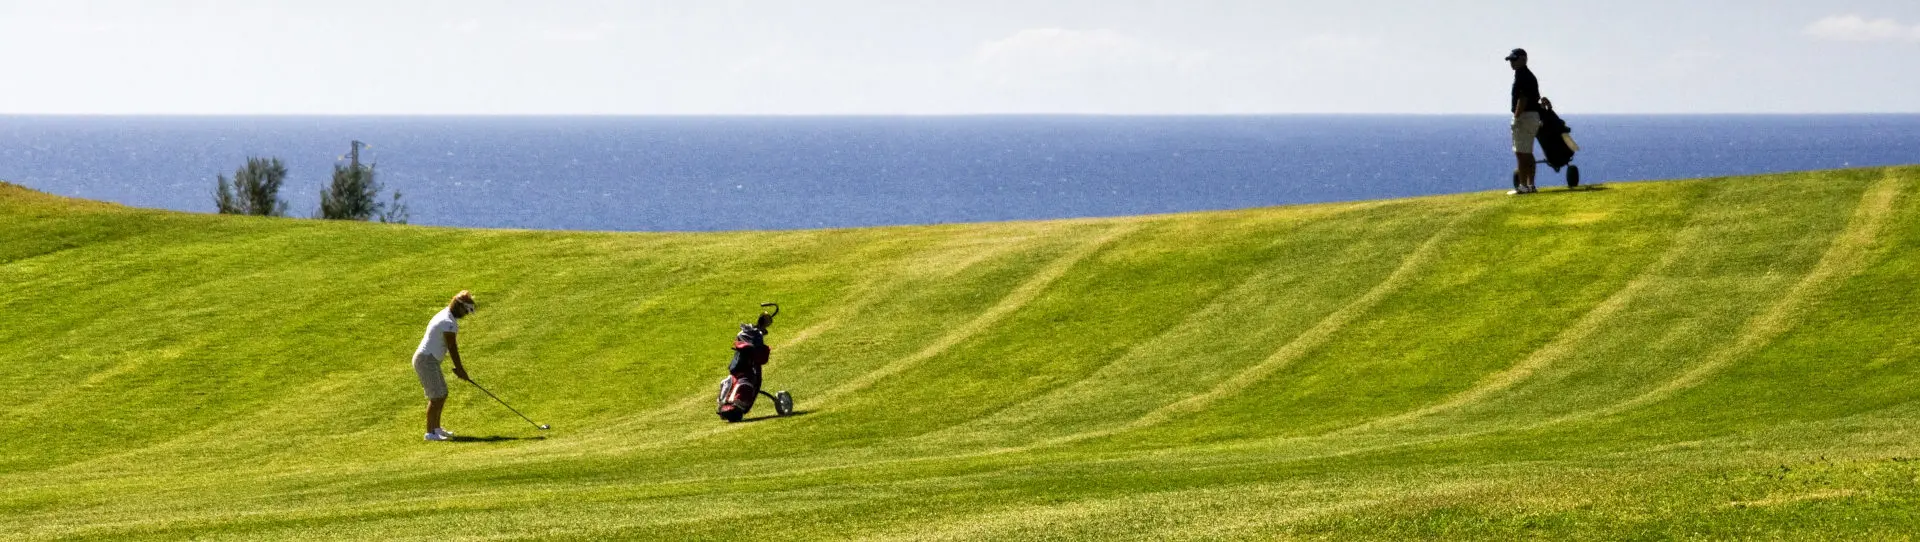 Spain golf courses - Lanzarote Golf Course - Photo 2